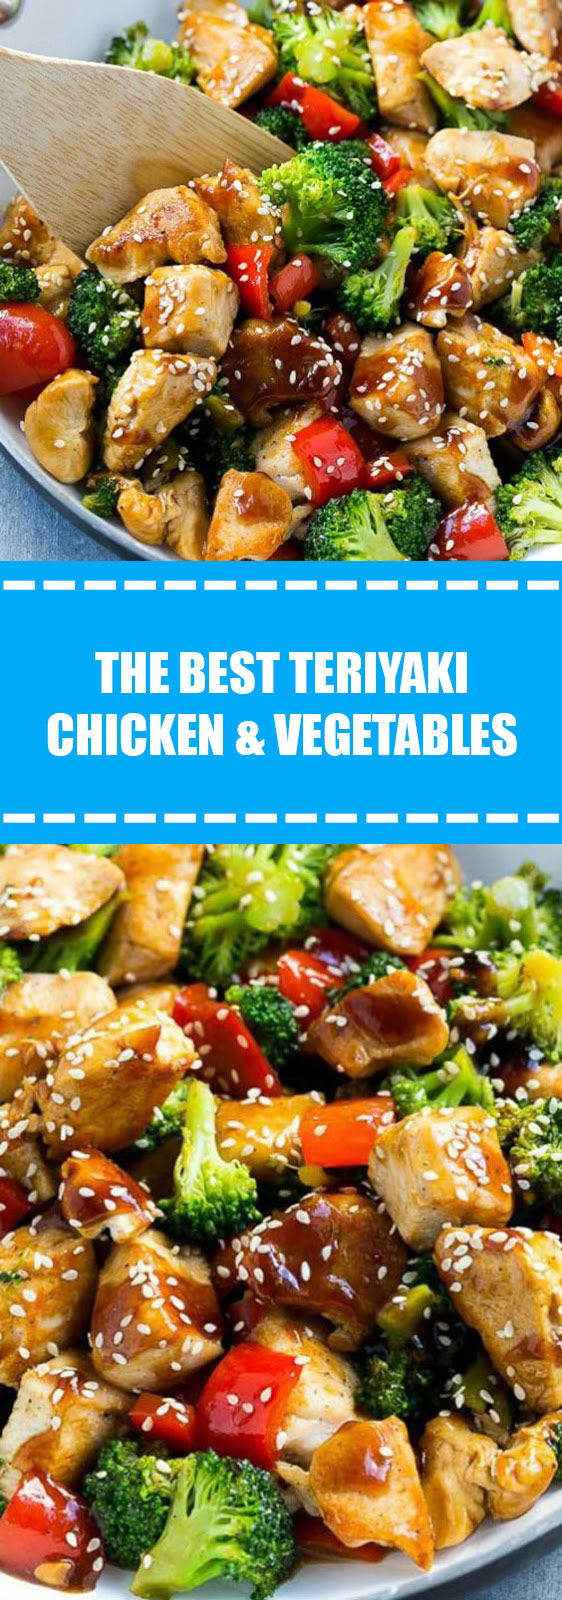 The Best Teriyaki Chicken & Vegetables